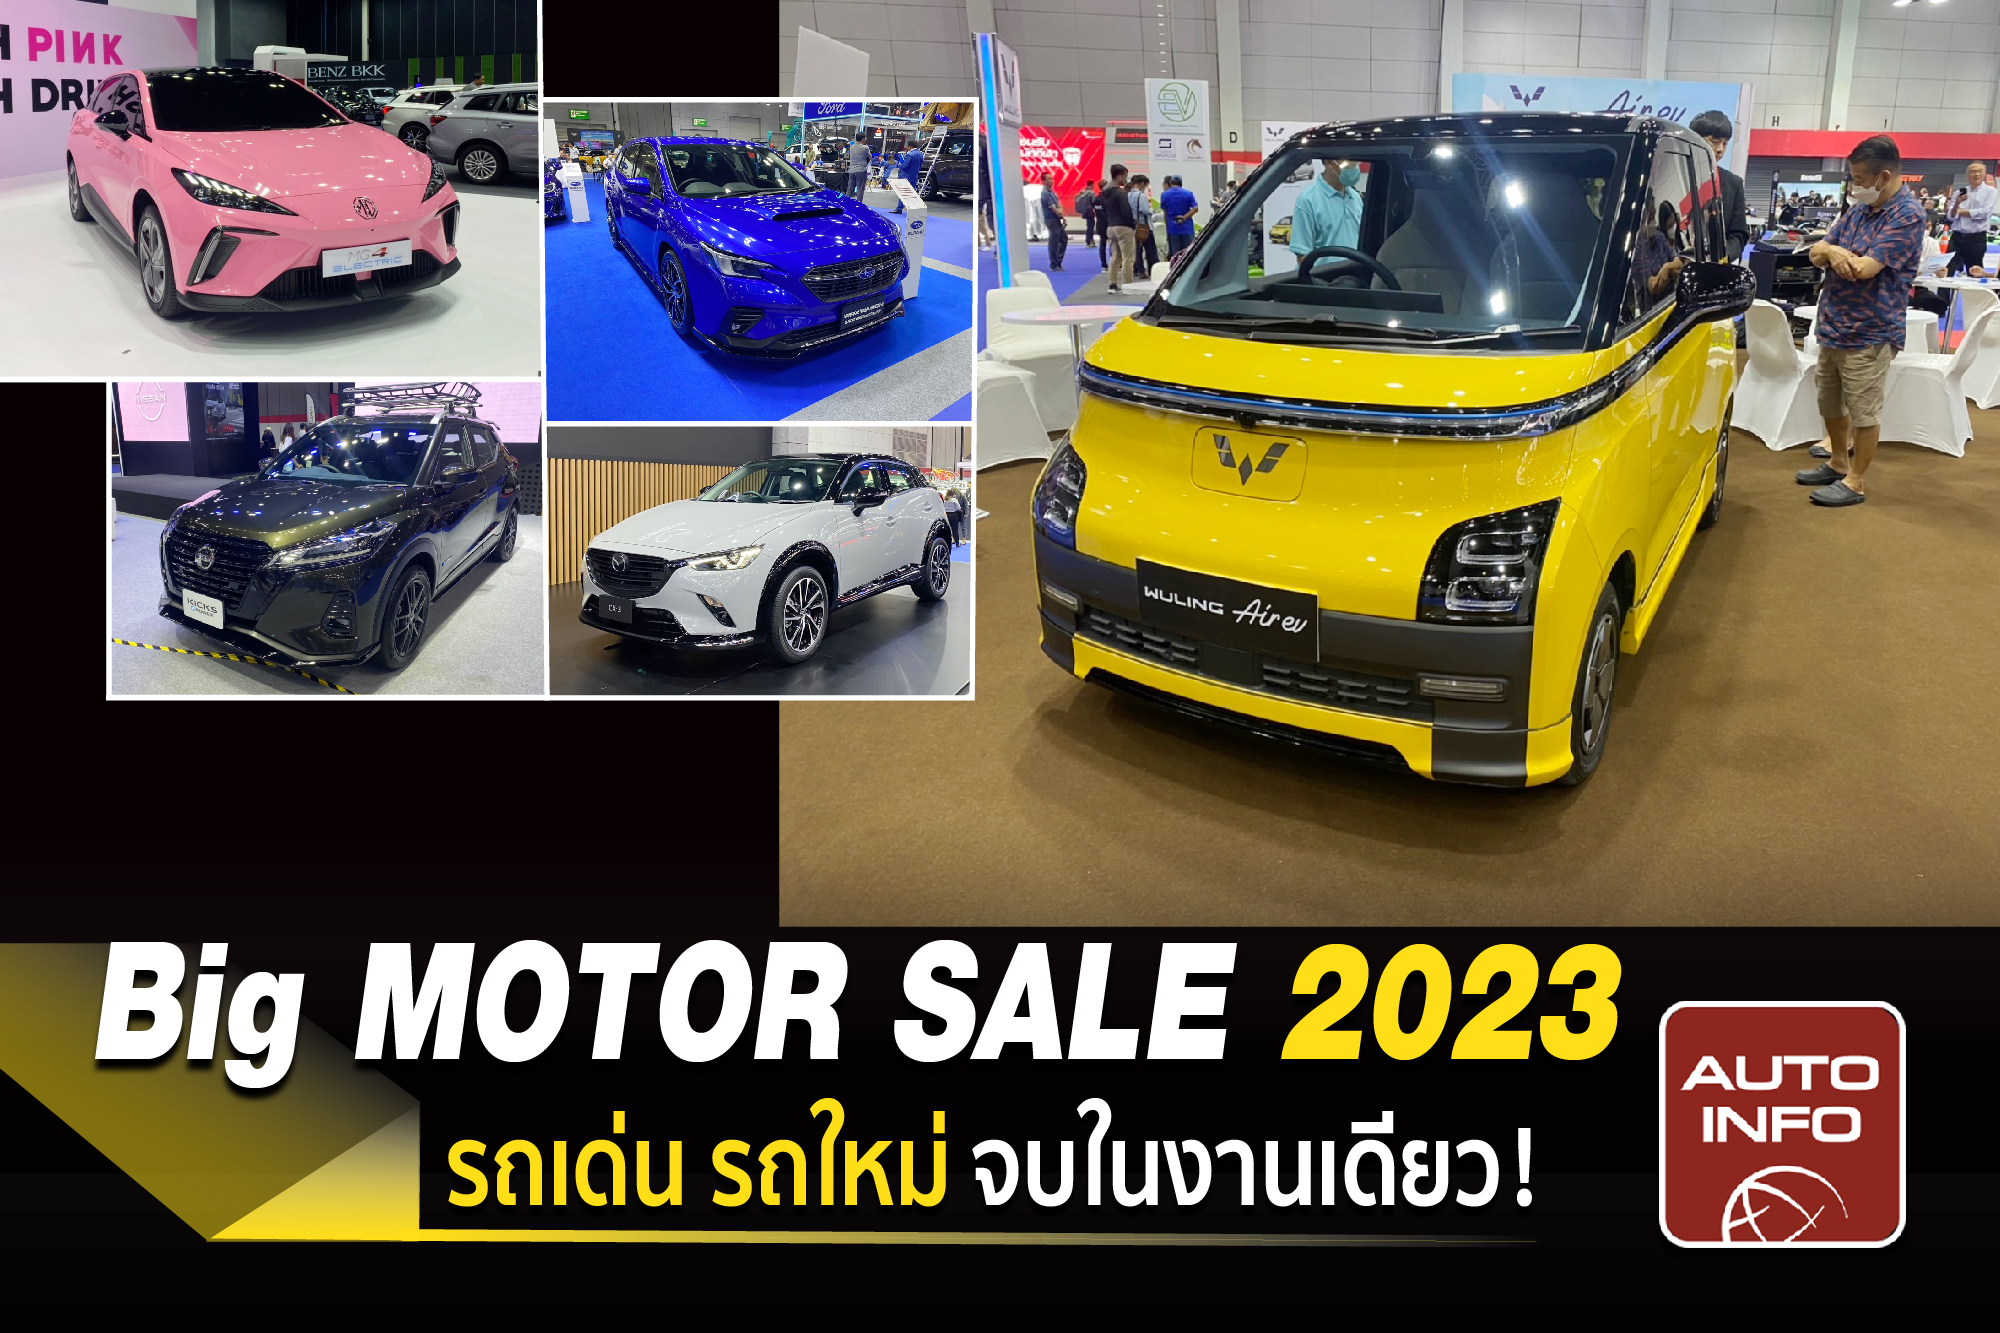 Big Motor Sale 2023 รถเด่น รถใหม่ จบในงานเดียว !